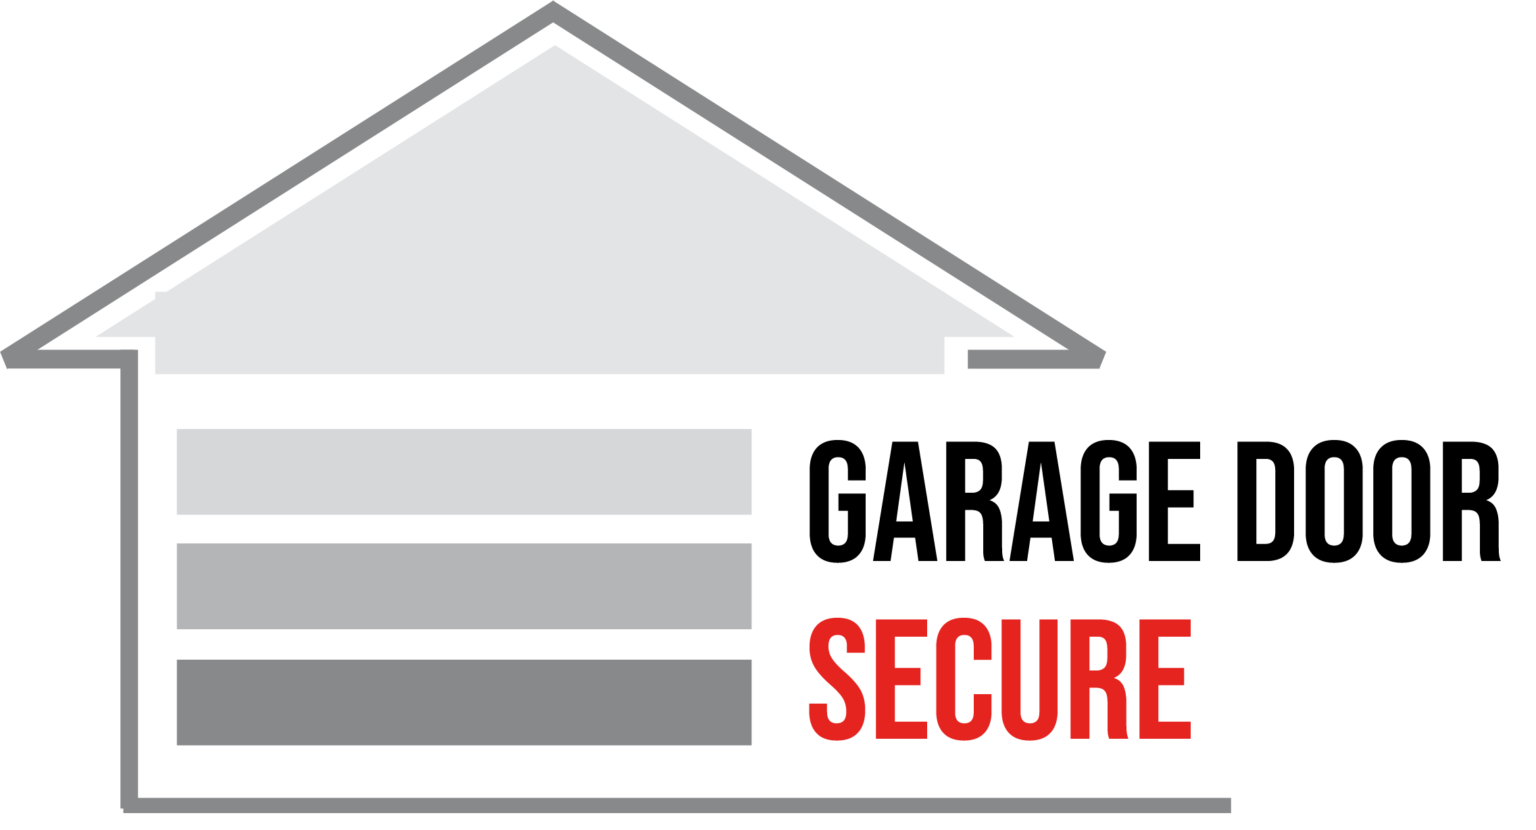 Garage Door Security 8 Ways For Best Protection Garage Door Secure